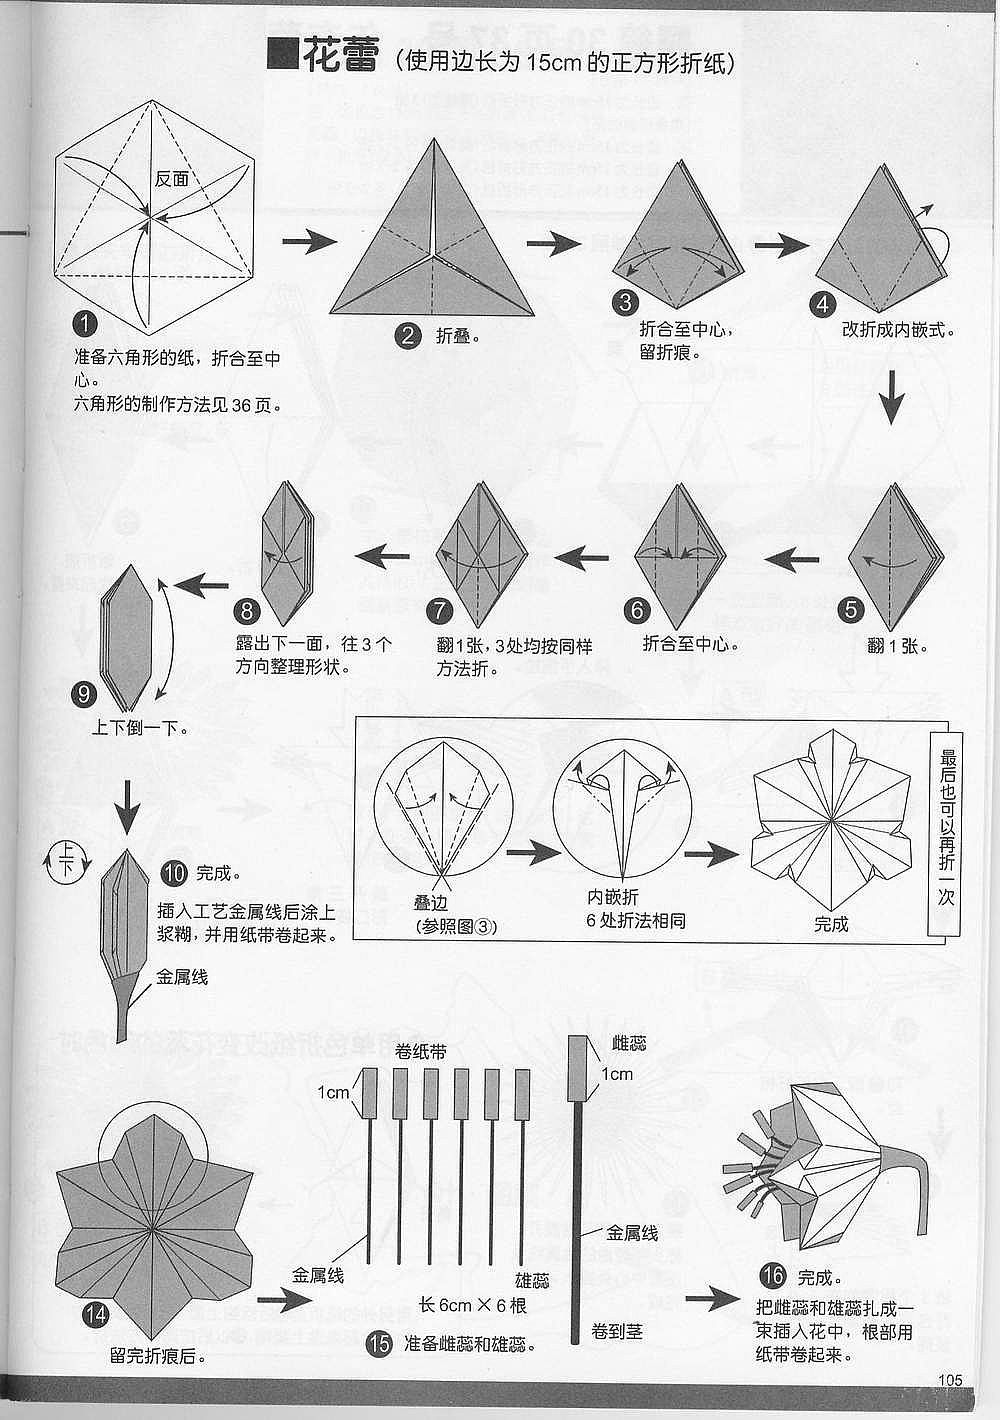 百合花折纸步骤 教程图片